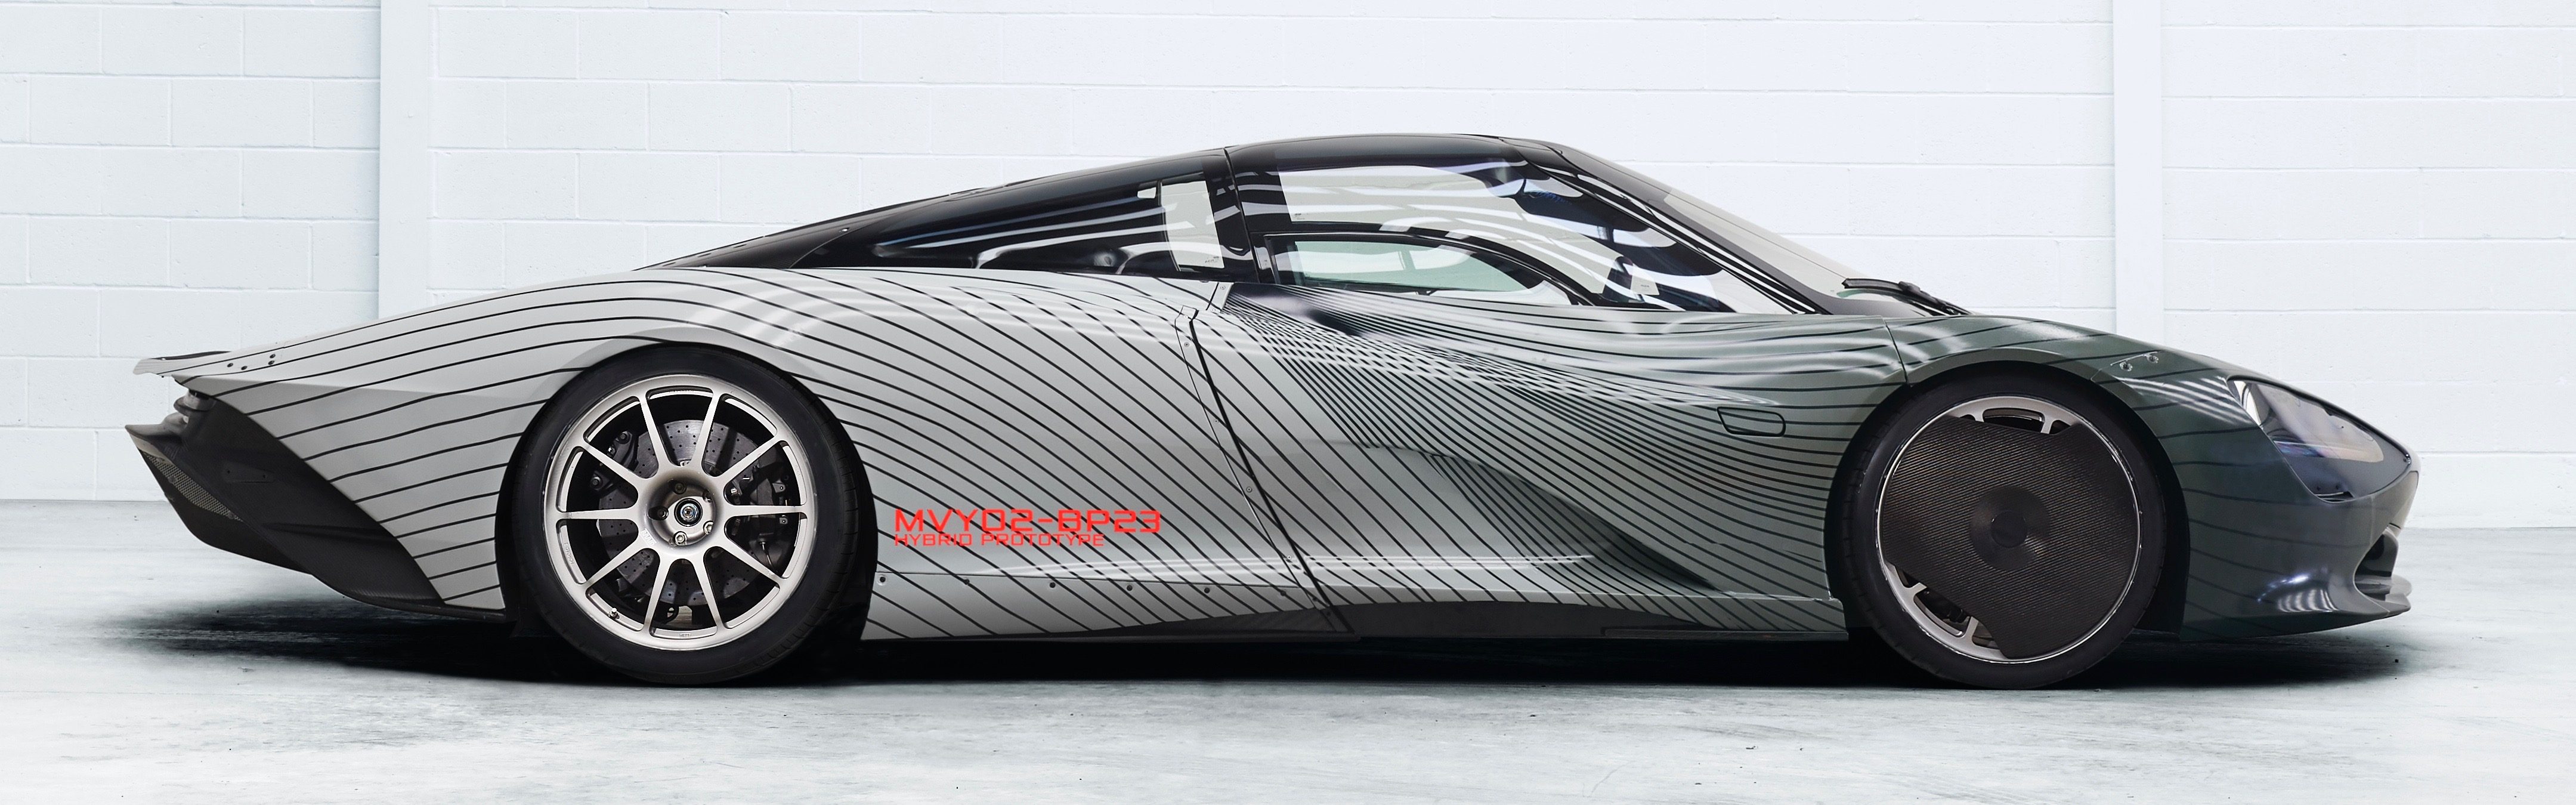 McLaren-Speedtail-Attribute-Prototype-Albert_image-01.jpg